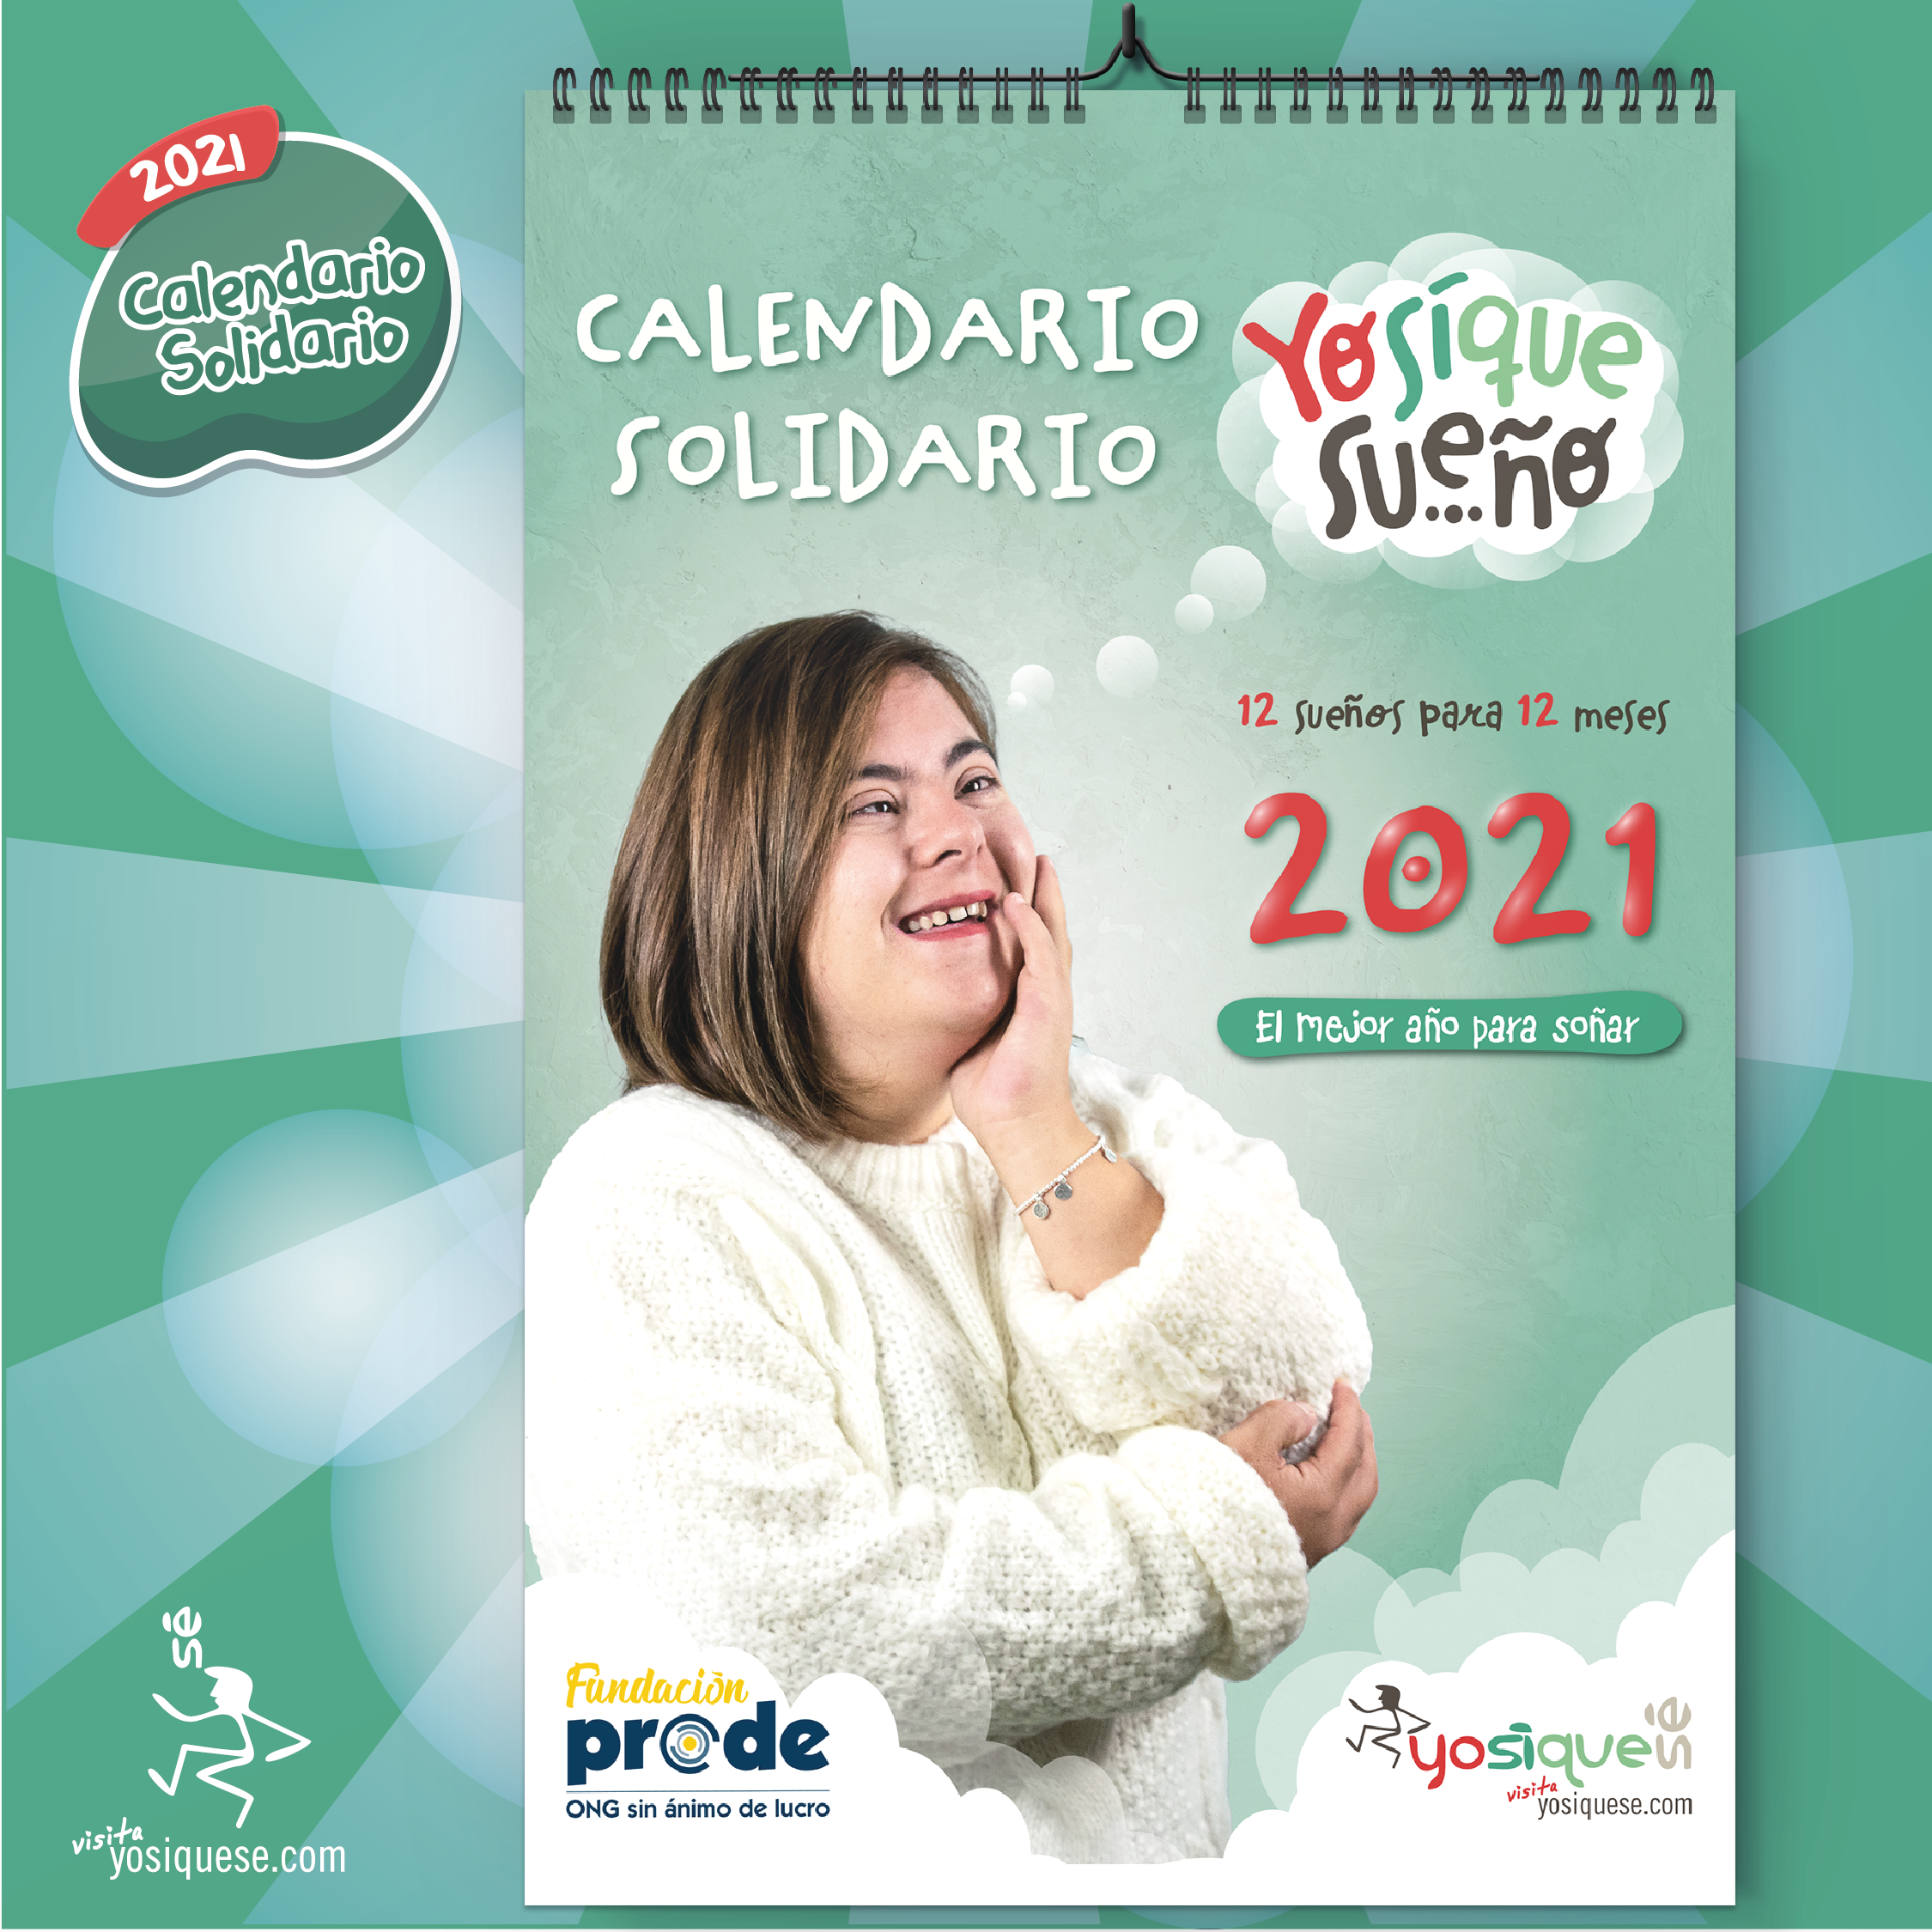 Calendario Solidario 2021: el mejor año para soñar